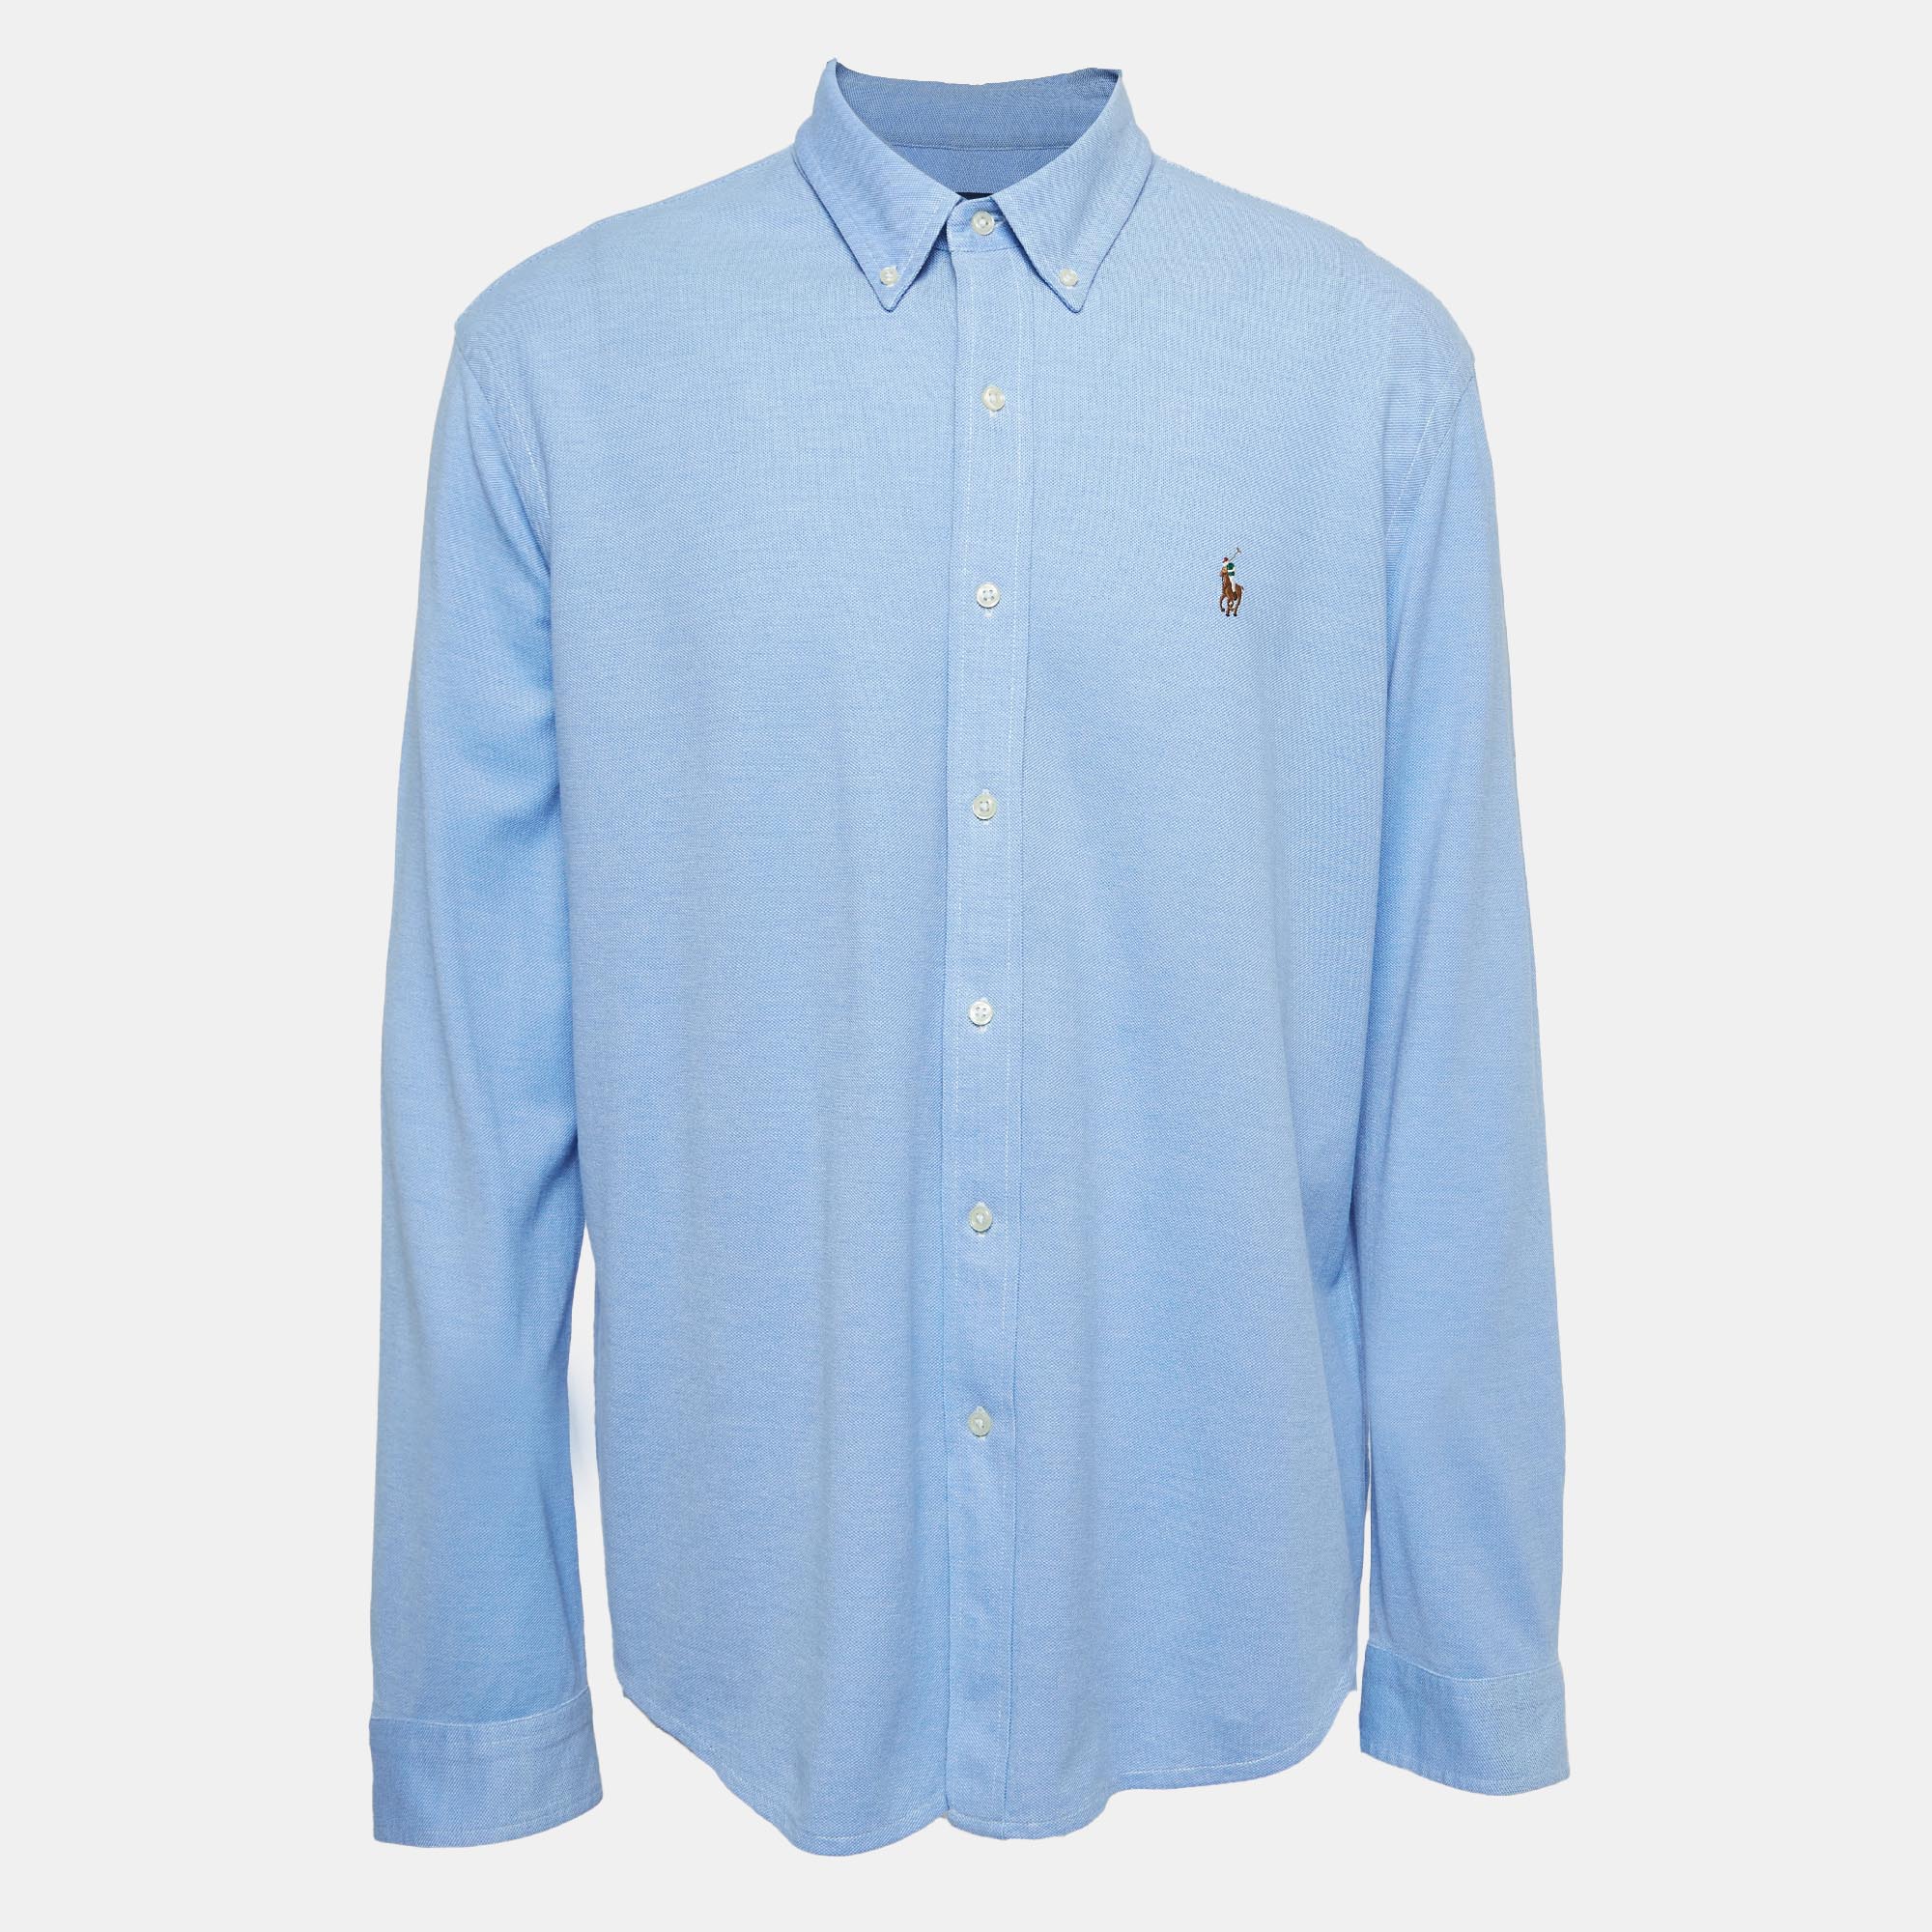 Ralph lauren blue knit oxford buttoned shirt xxl